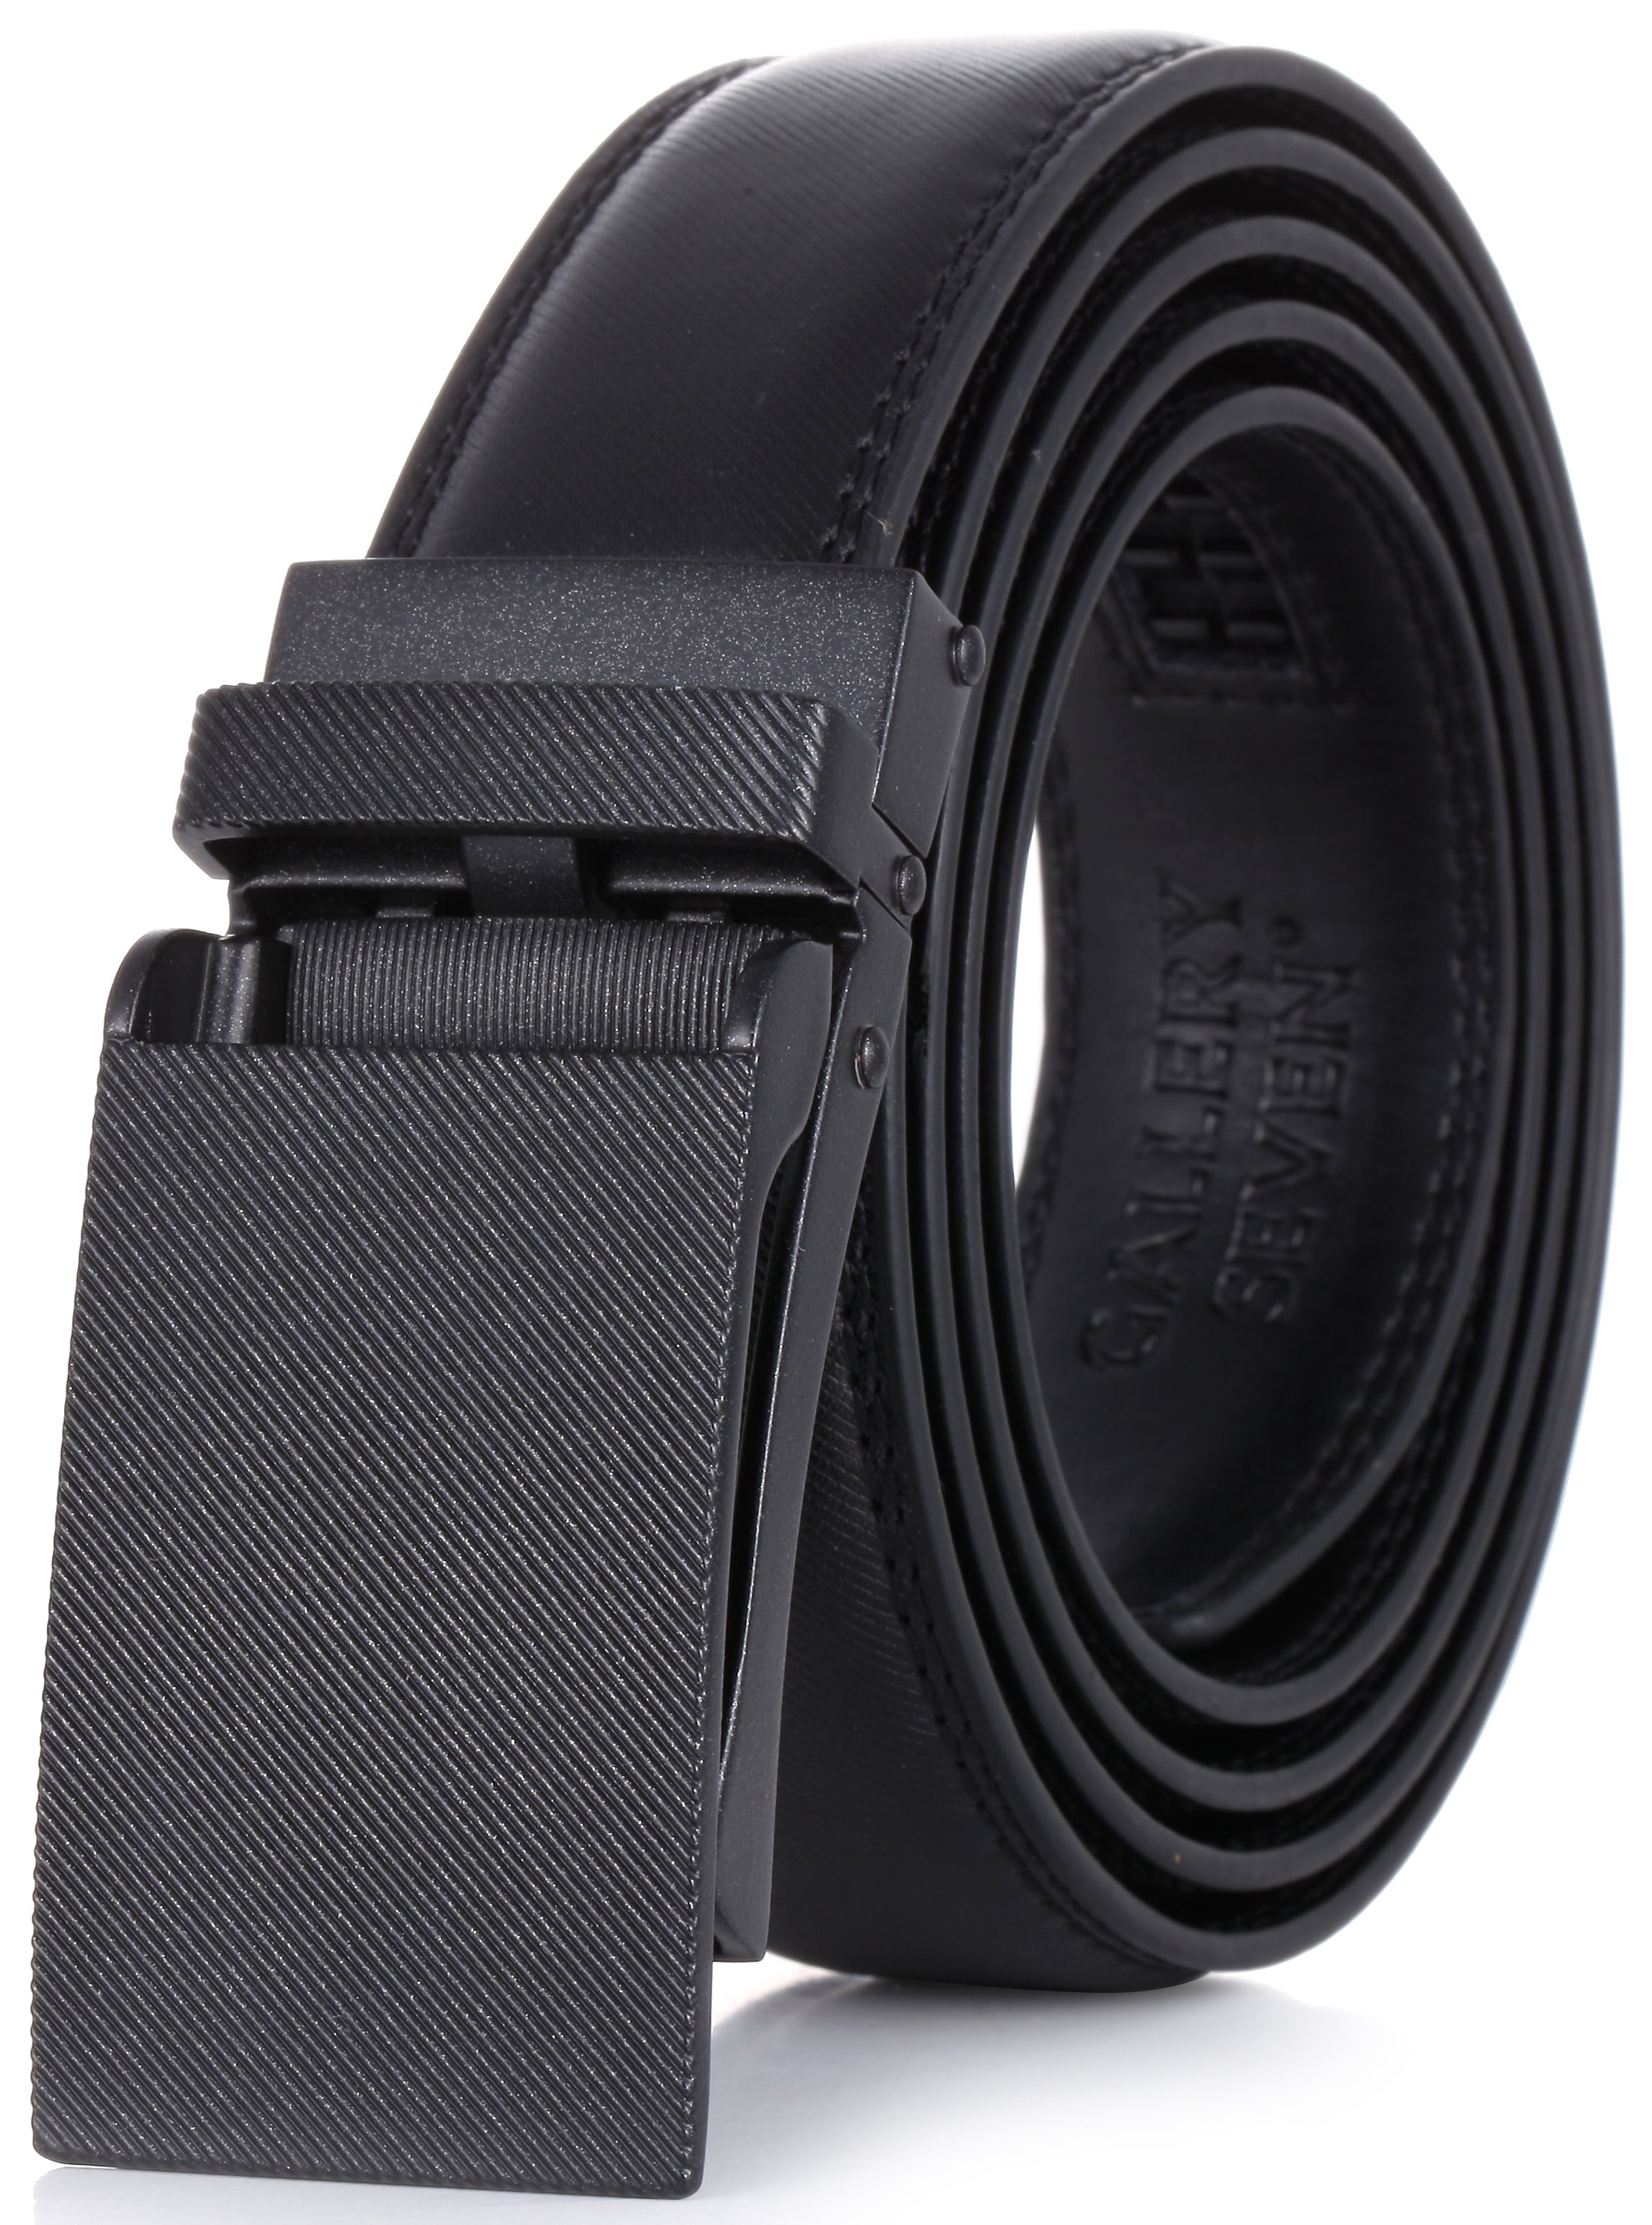 Gallery Seven Leather Ratchet Belt For Men - Adjustable Click Belt ...